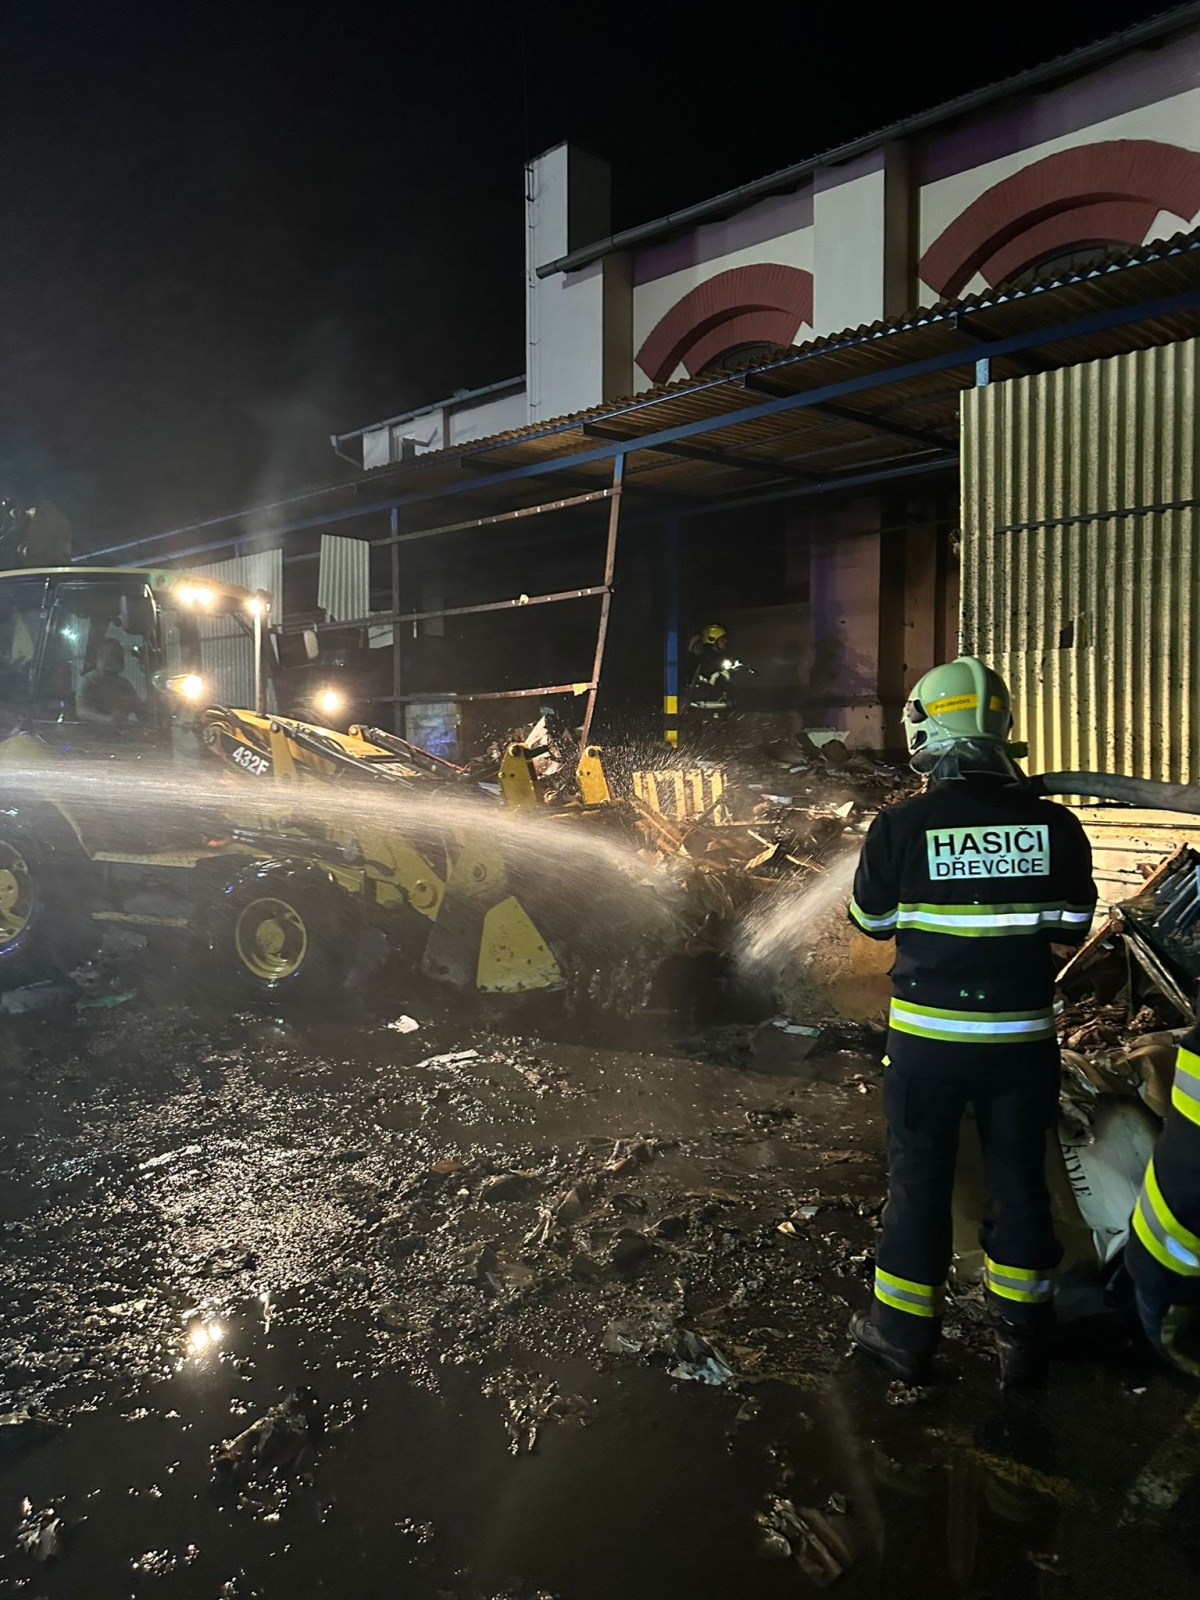 011-Požár skladovací haly v Brandýse nad Labem likvidovaný ve třetím poplachovém stupni.jpeg